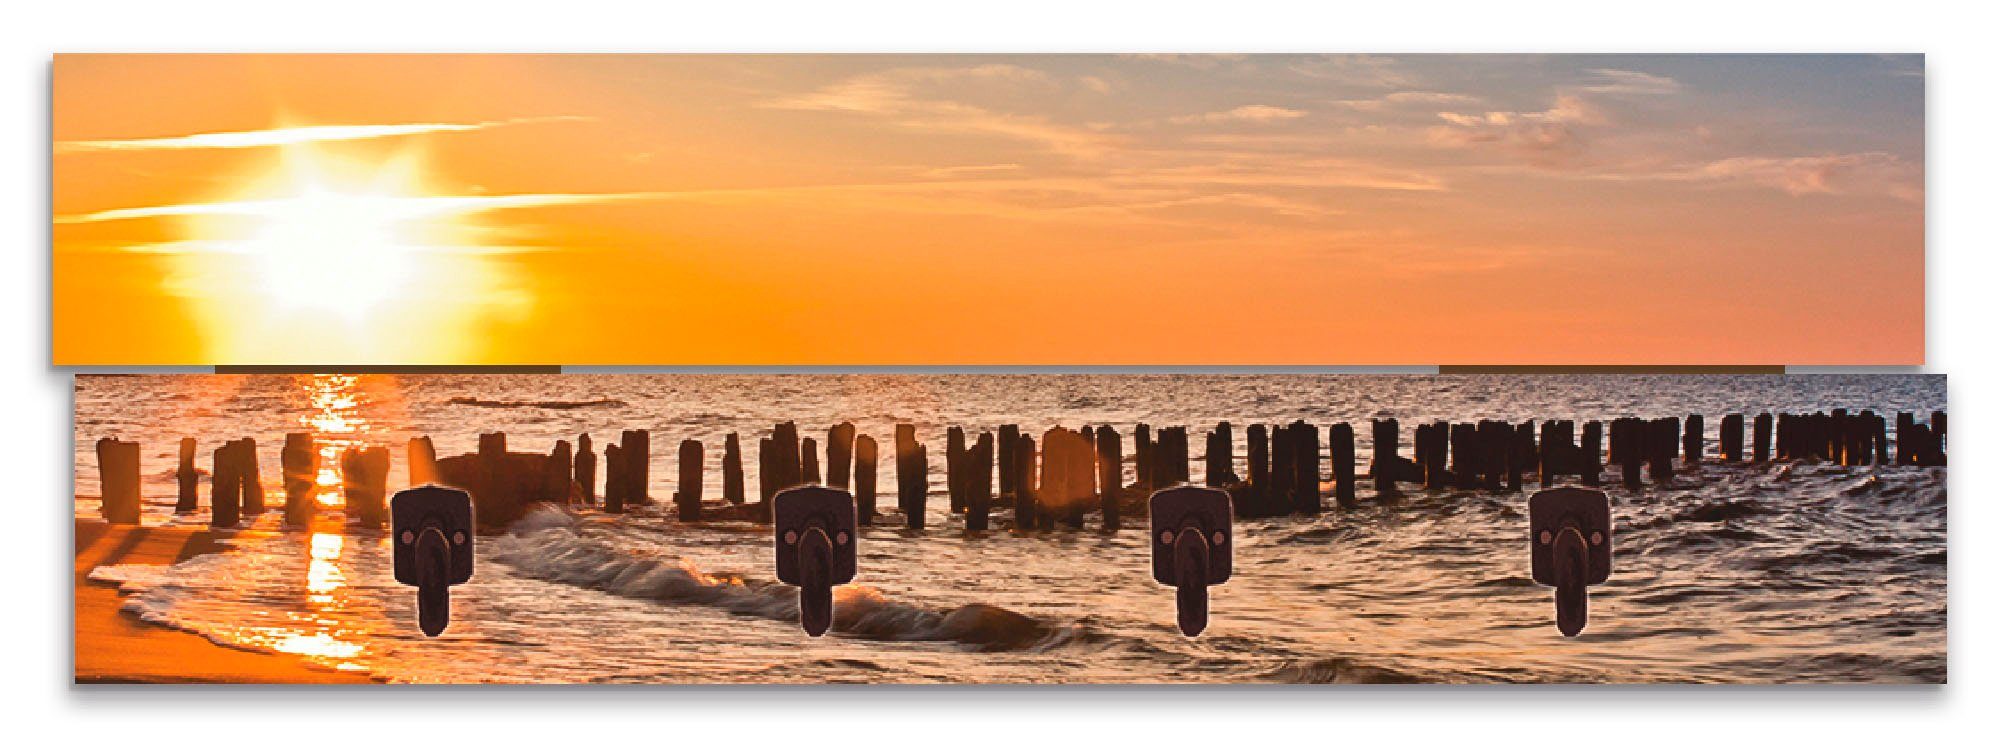 Artland Kapstokpaneel Mooie zonsondergang aan het strand ruimtebesparende kapstok van hout met 4 haken, geschikt voor kleine, smalle hal, halkapstok